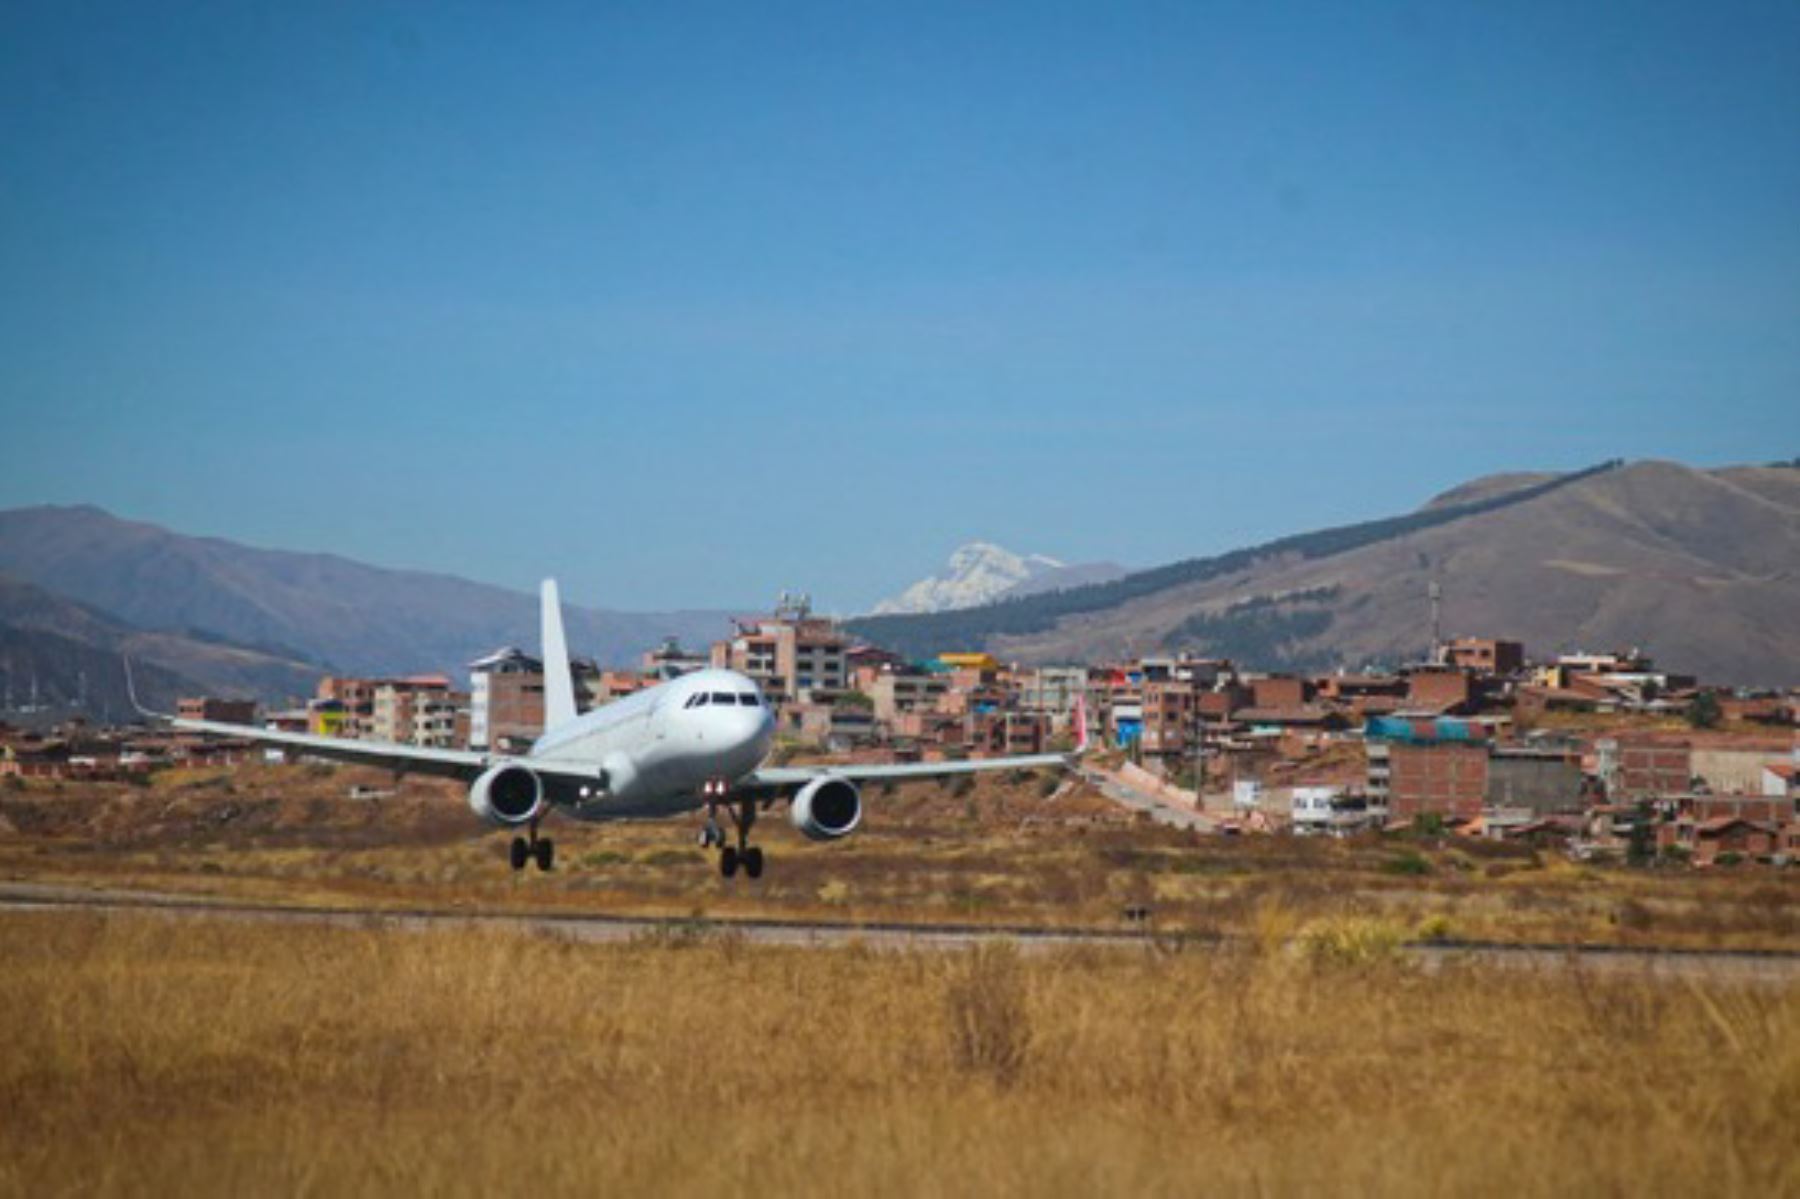 Turismo entre Lima, Juliaca y Puerto Maldonado se fortalecerá con nuevas rutas aéreas que empezarán a operar desde febrero de 2020, informó el MTC.